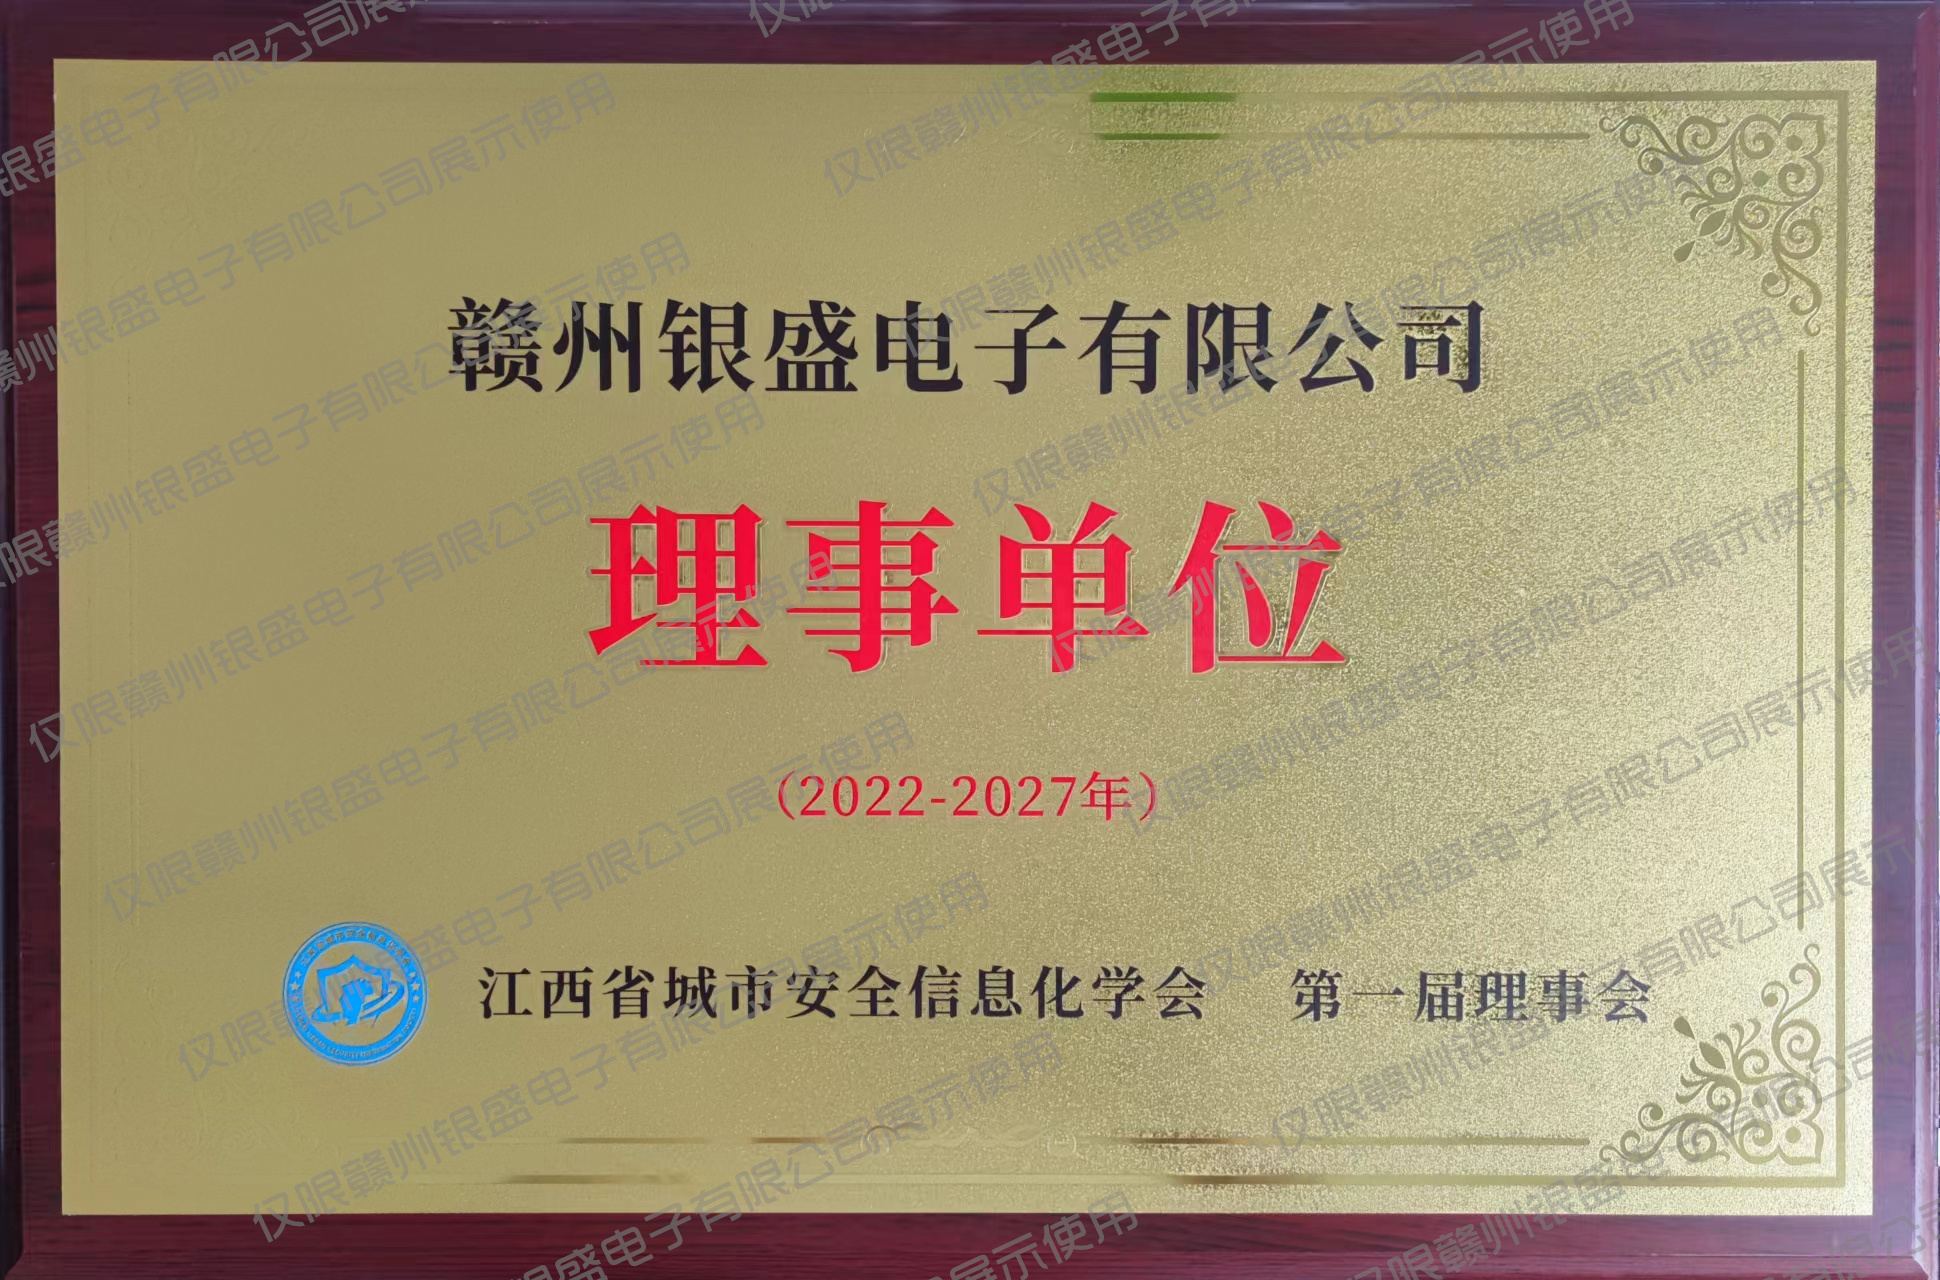 9.江西省城市安全信息化学会第一届理事单位